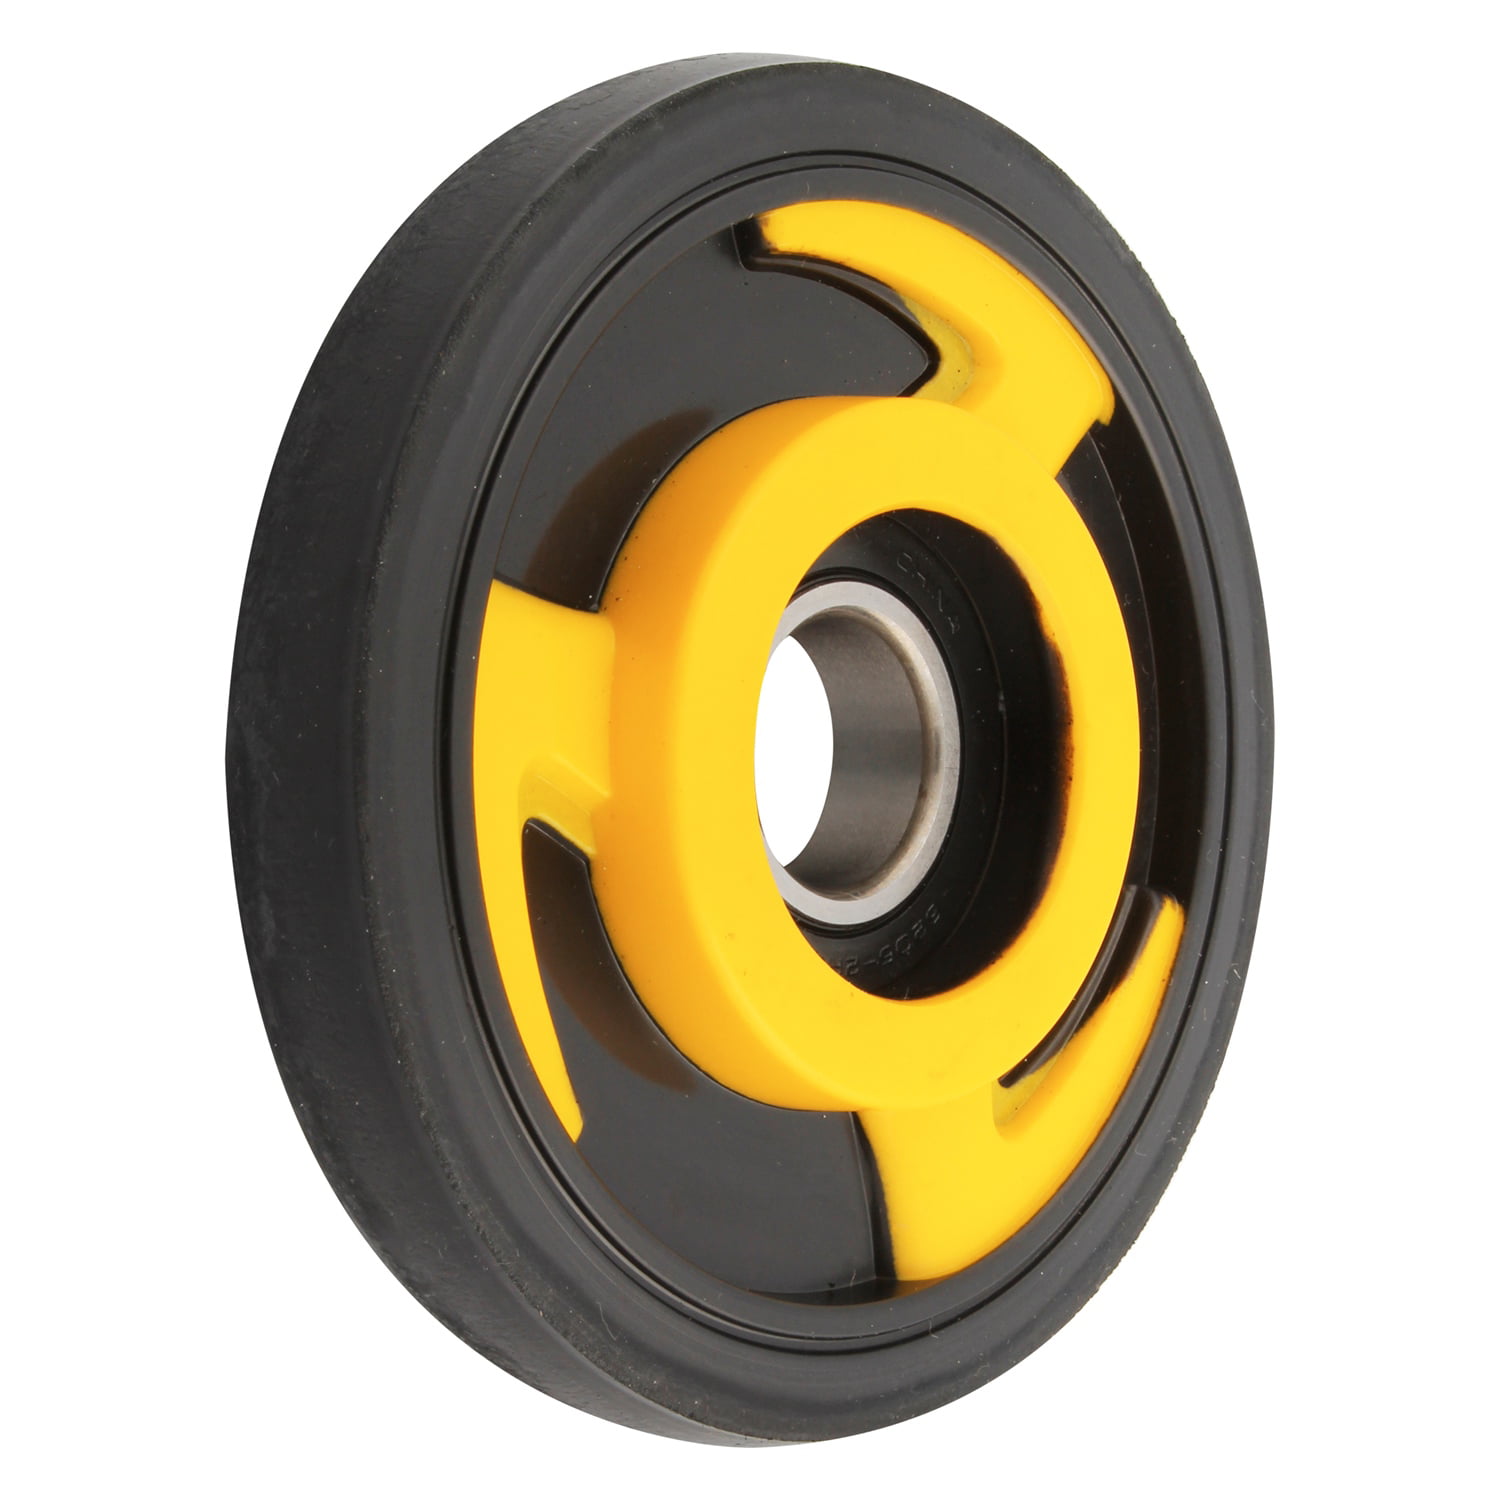 Kimpex Idler Wheel w/Bearing 5.125 Yellow Ref 8ES-47310-40 Yamaha 2006-2007